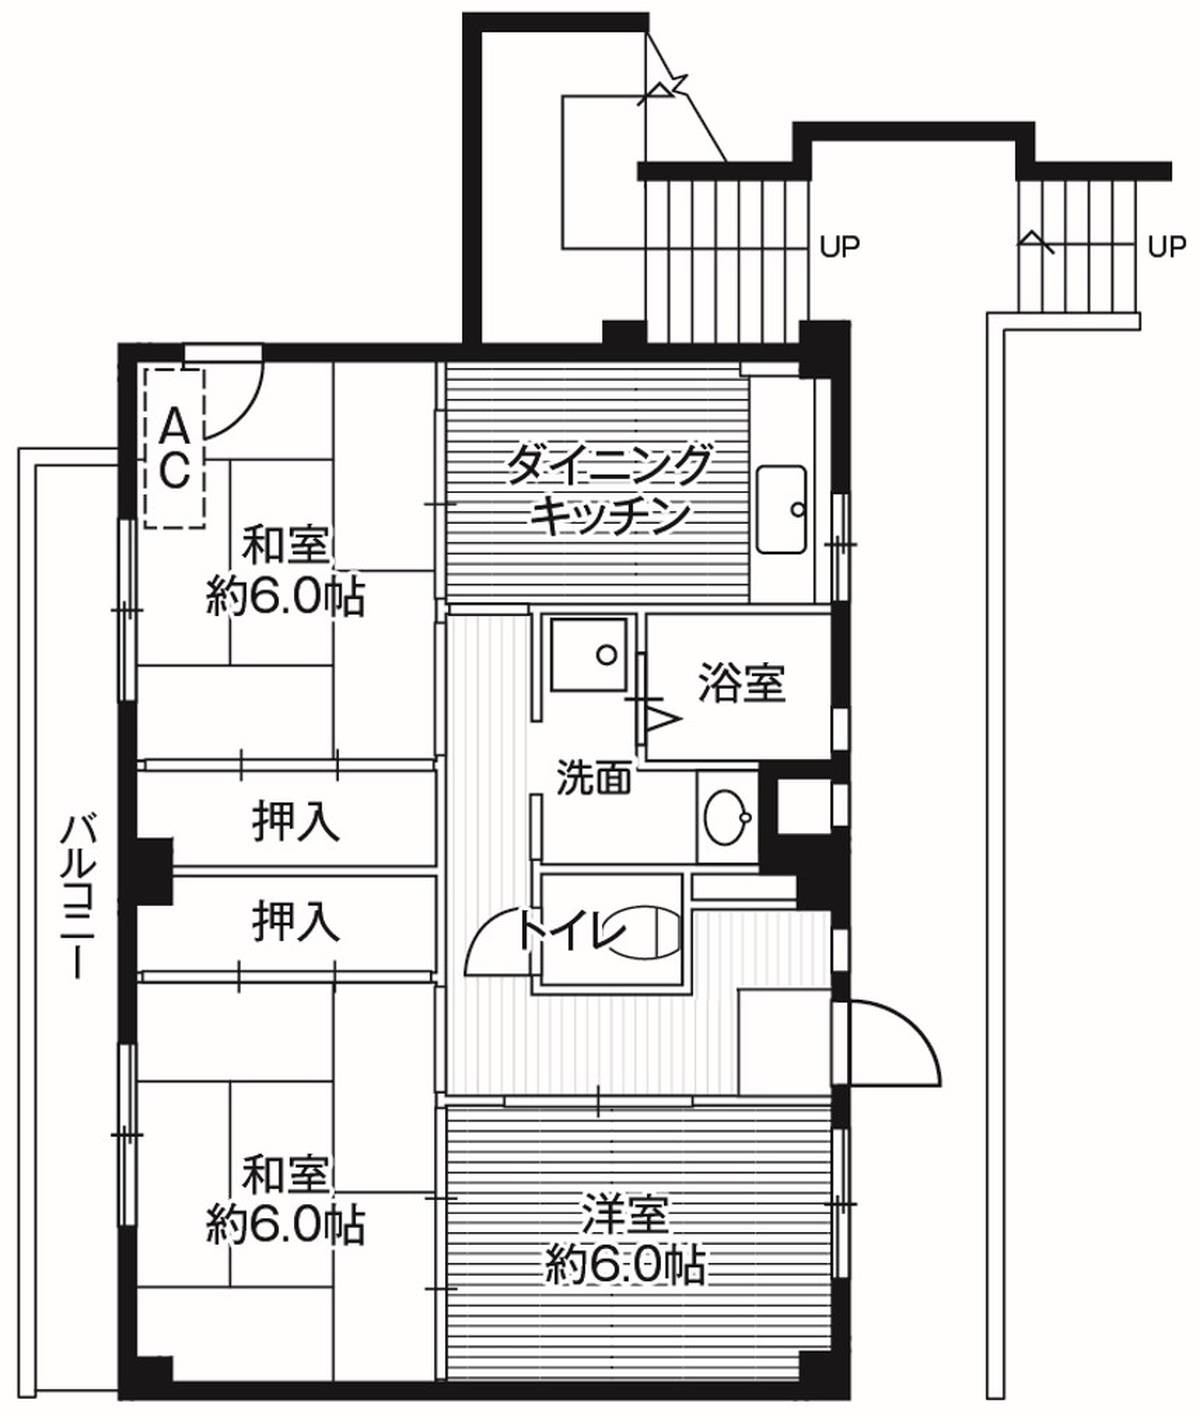 Sơ đồ phòng 3DK của Village House Akita ở Akiruno-shi